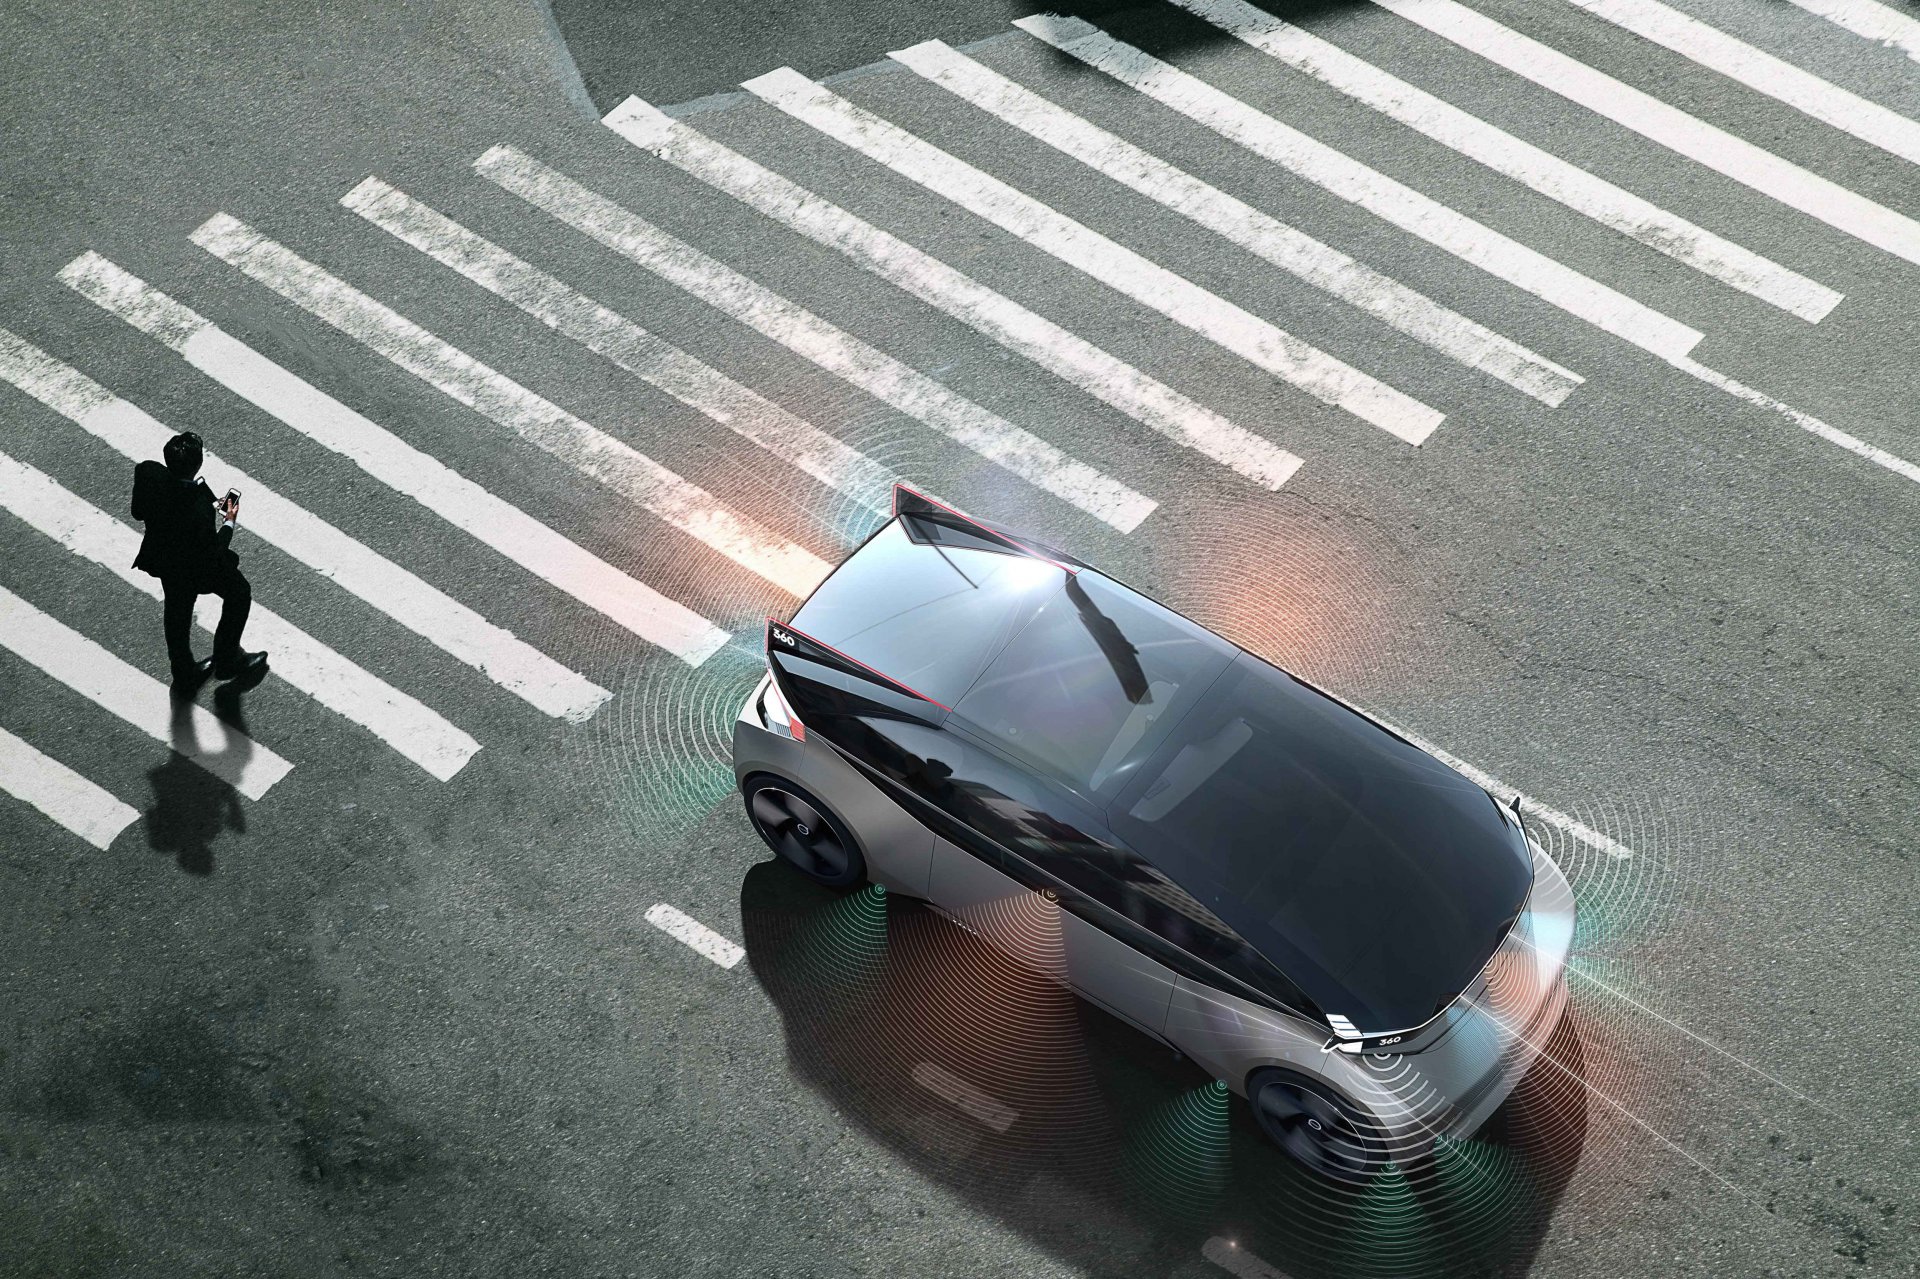 การพัฒนา Volvo 360c เพื่อนำสู่มาตรฐานสากลในรูปแบบใหม่ ด้านความปลอดภัยในการสื่อสารของรถยนต์อัตโนมัติกับผู้ใช้ท้องถนน